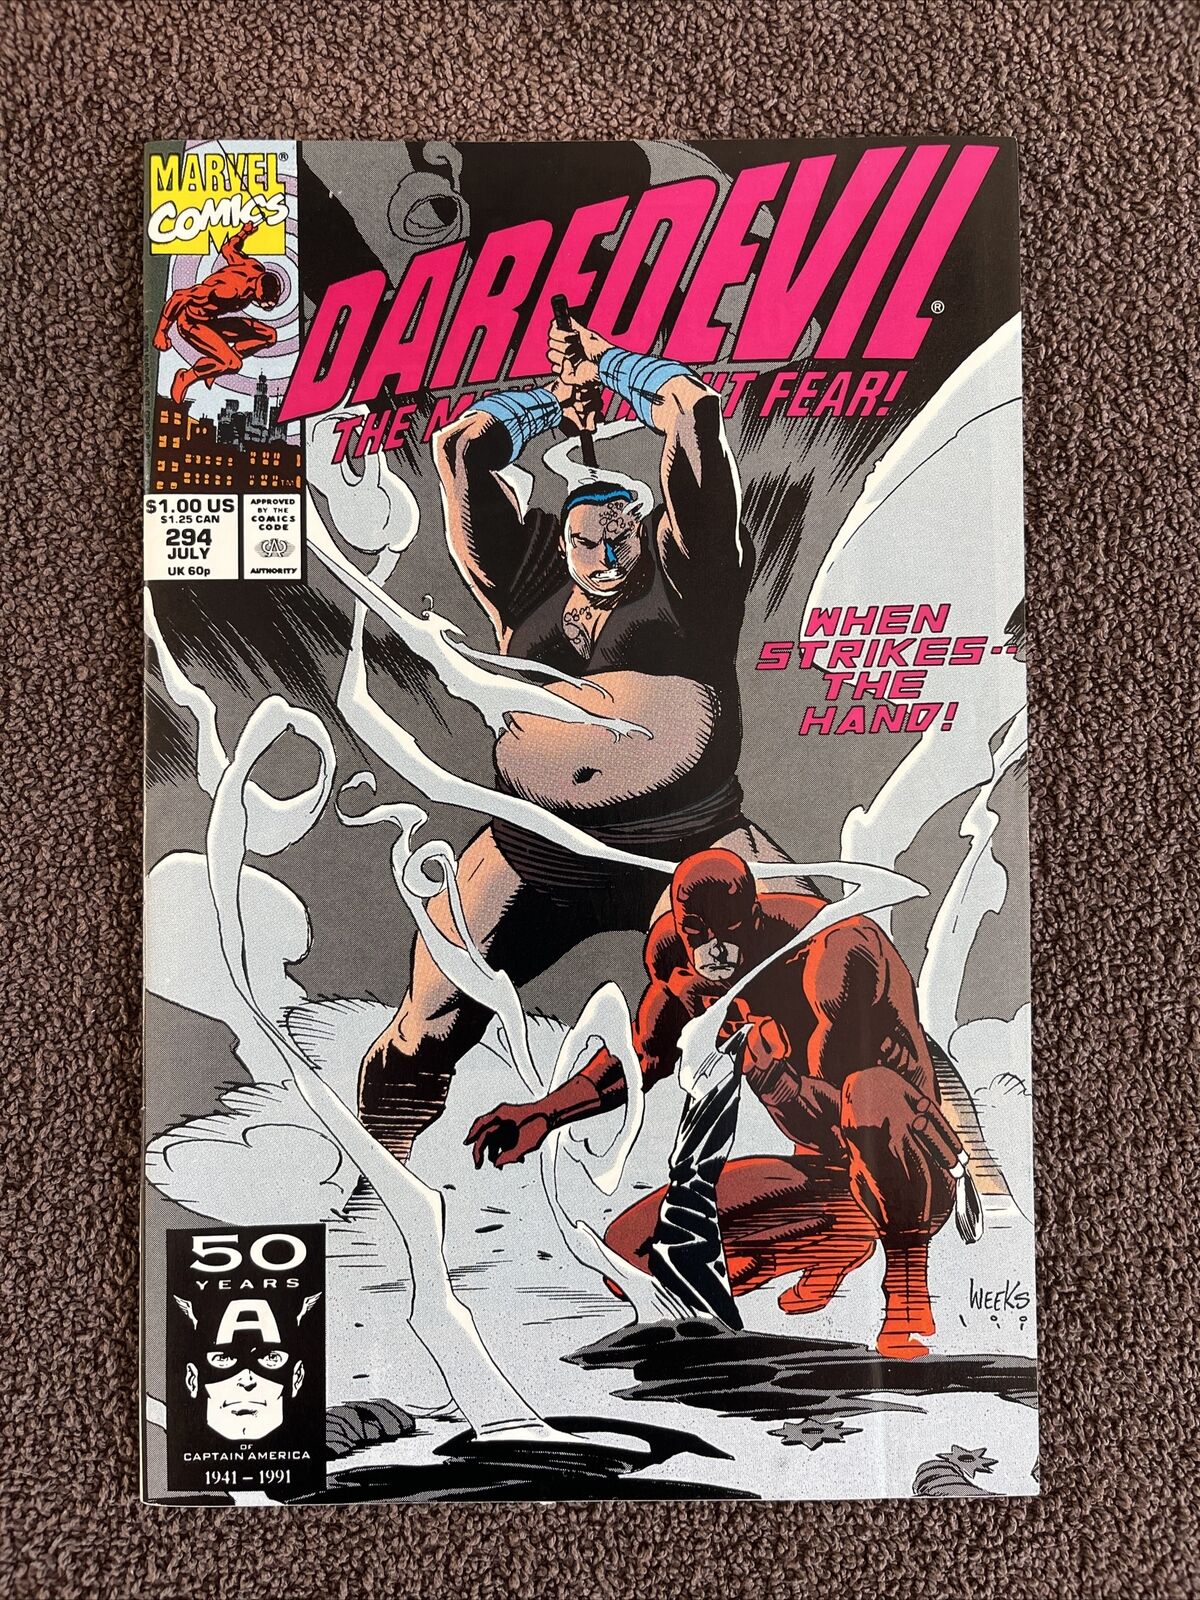 DAREDEVIL #294 (Marvel, 1991) Lee Weeks